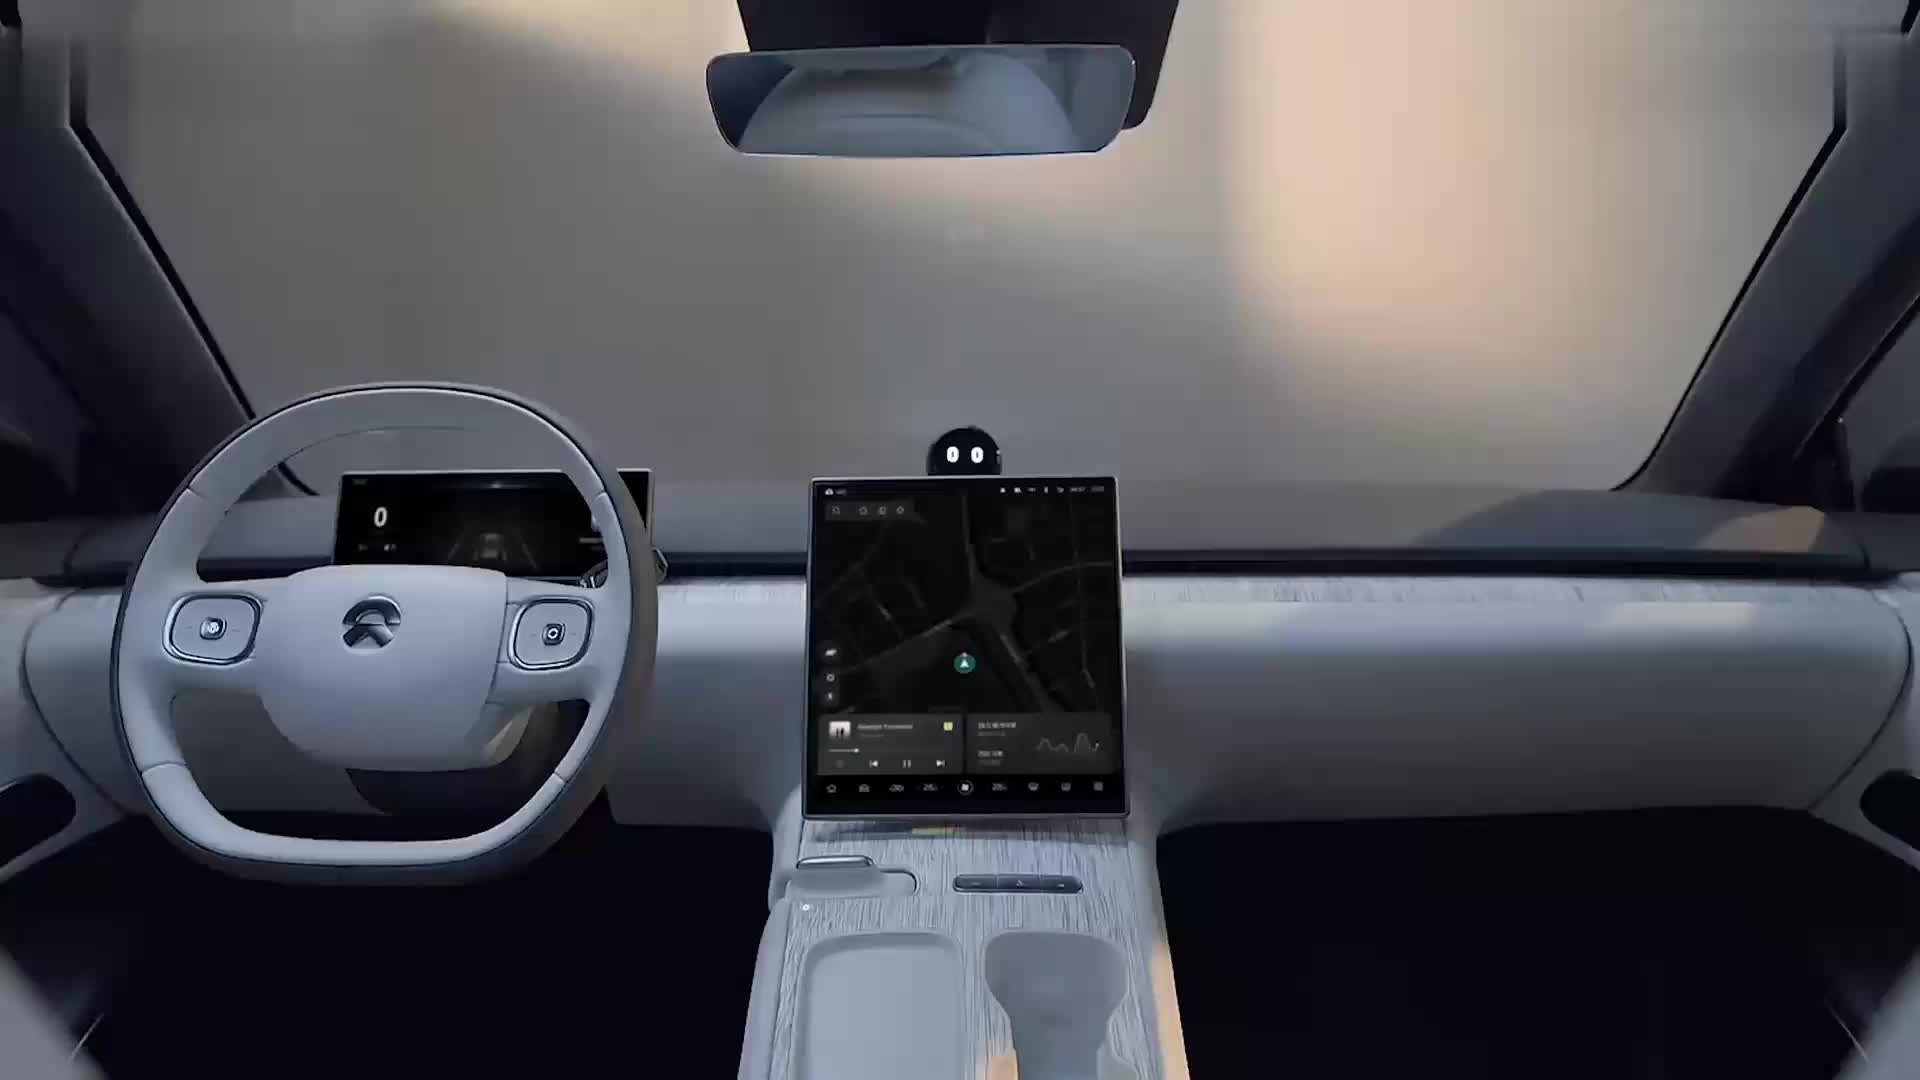 毫米波 摄像头 激光雷达，现在汽车为什么要这么多传感器？#车载雷达 #自动驾驶 